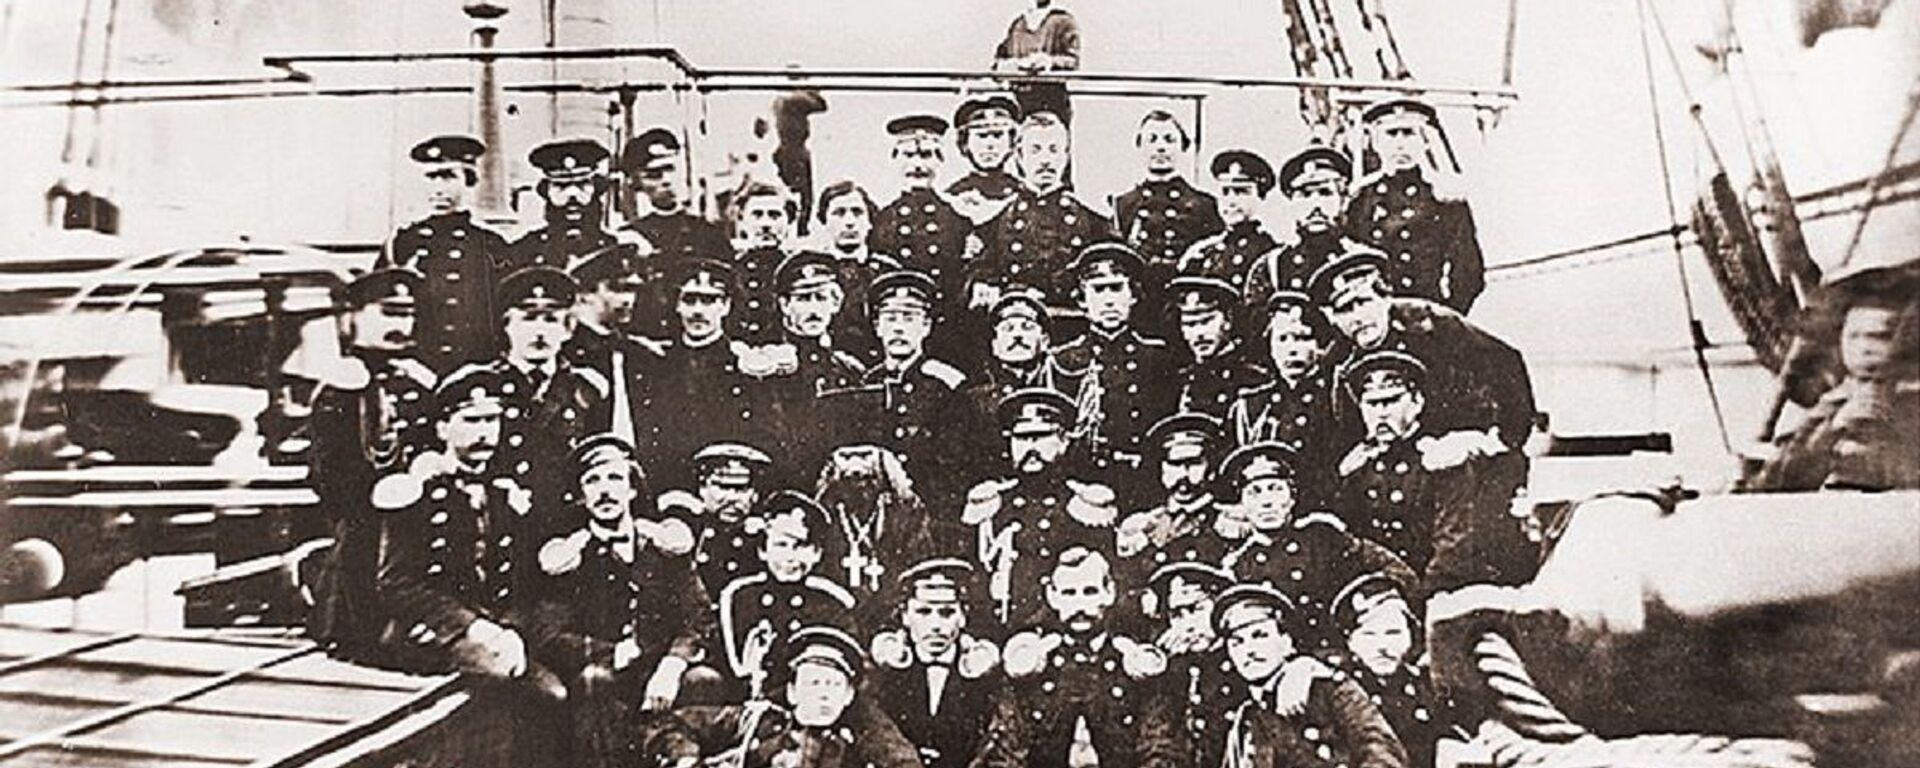 Oficiales rusos a bordo de la fragata Peresvet, en Boston, en 1863 - Sputnik Mundo, 1920, 01.10.2020